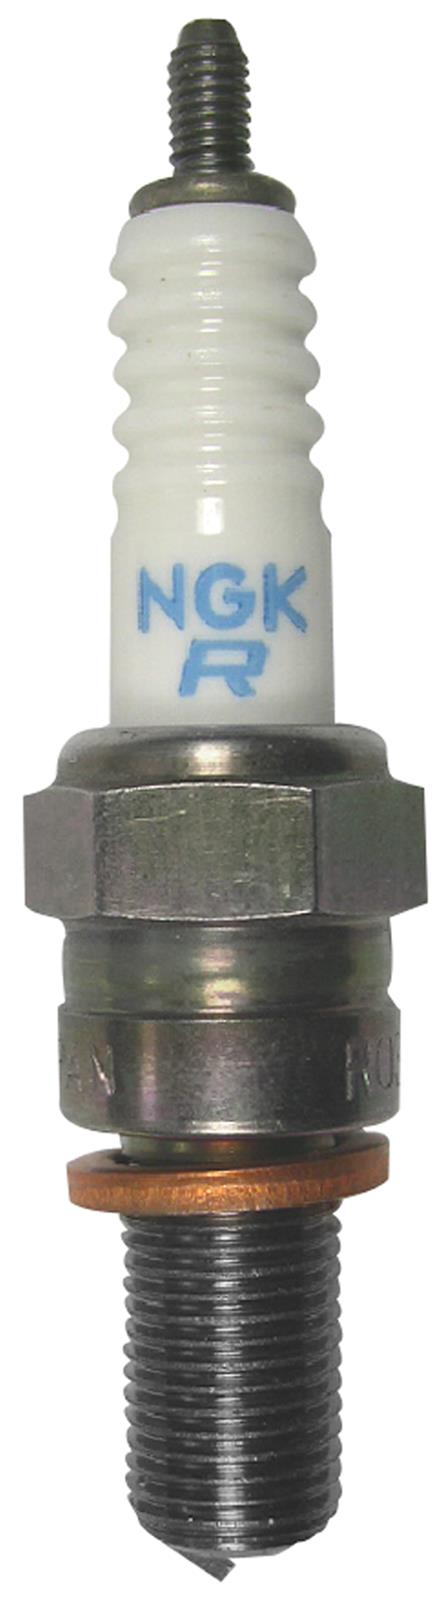 NGK Racing Spark Plug Box of 4 (1481)